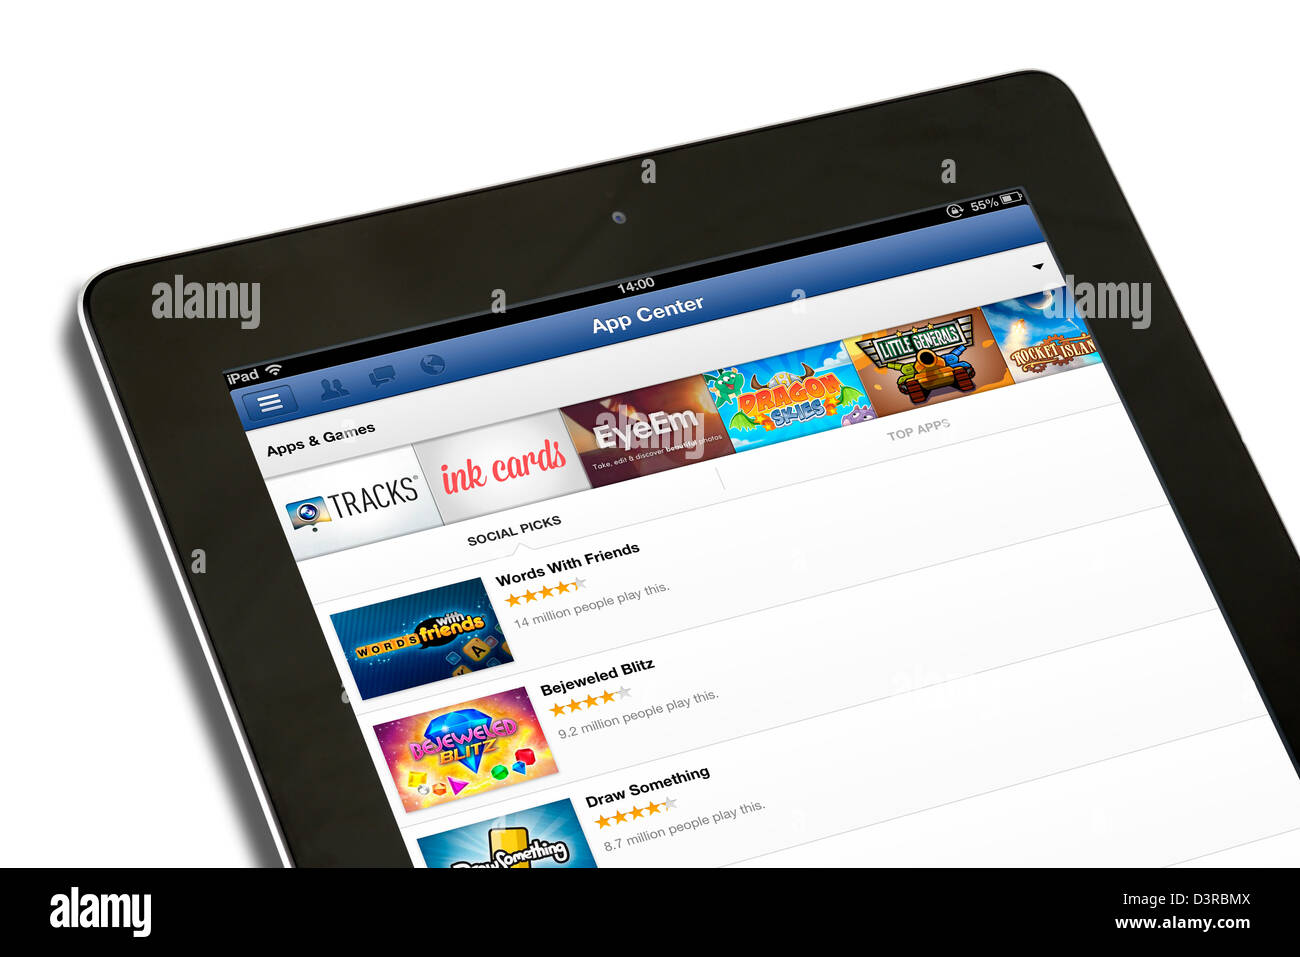 El App Center en Facebook ver en un iPad de 4ª generación, REINO UNIDO Foto de stock